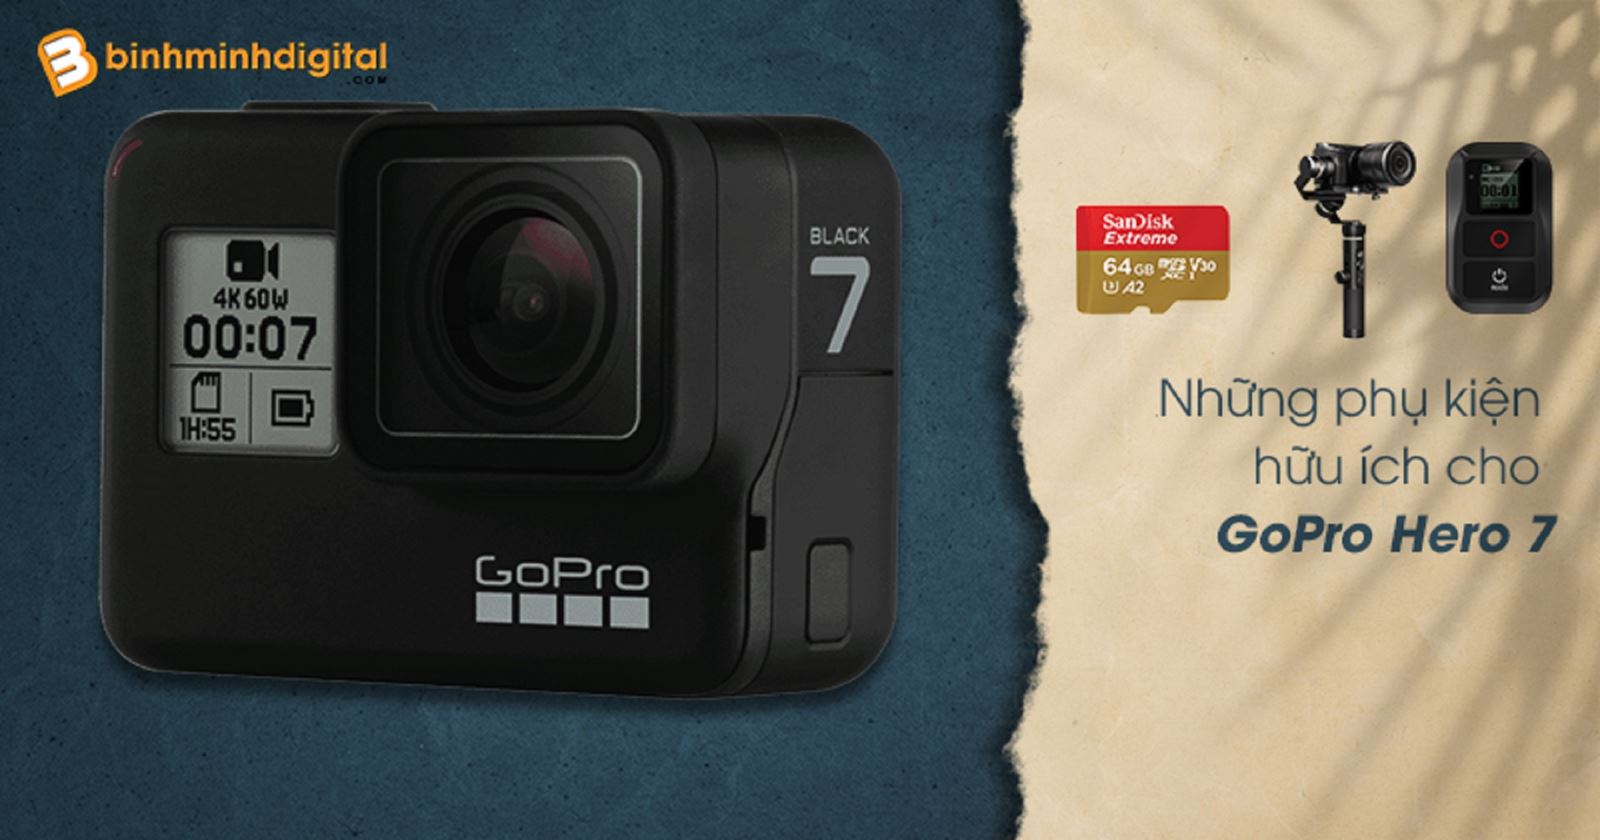 Những phụ kiện hữu ích cho GoPro Hero 7